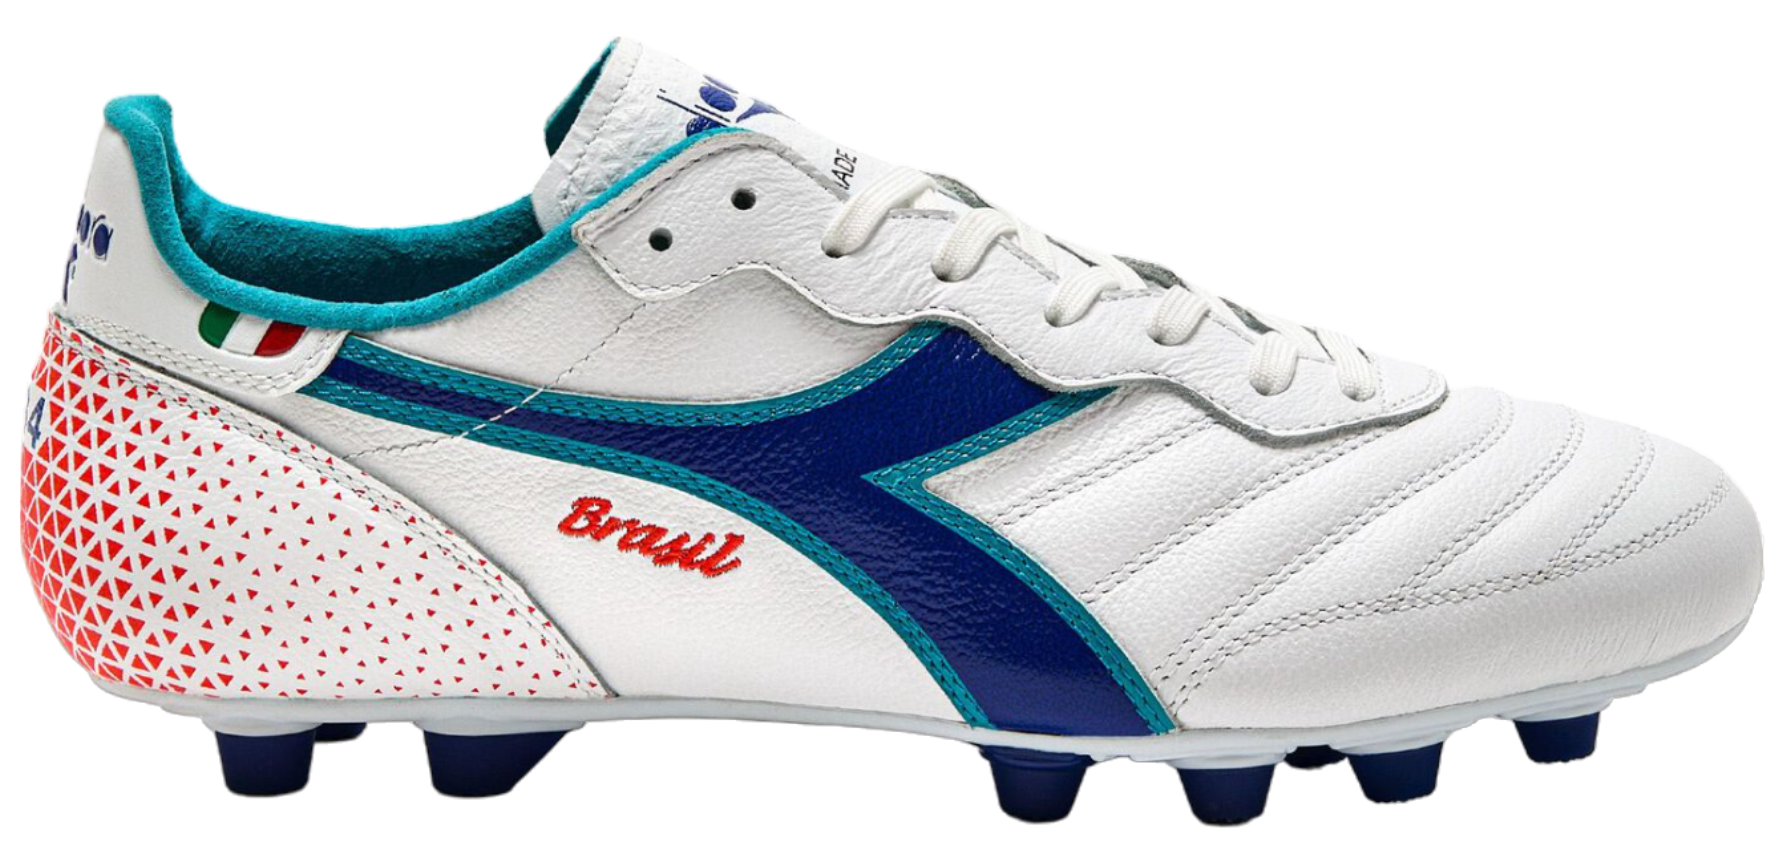 Nogometni čevlji Diadora Brasil Made in Italy OG FG